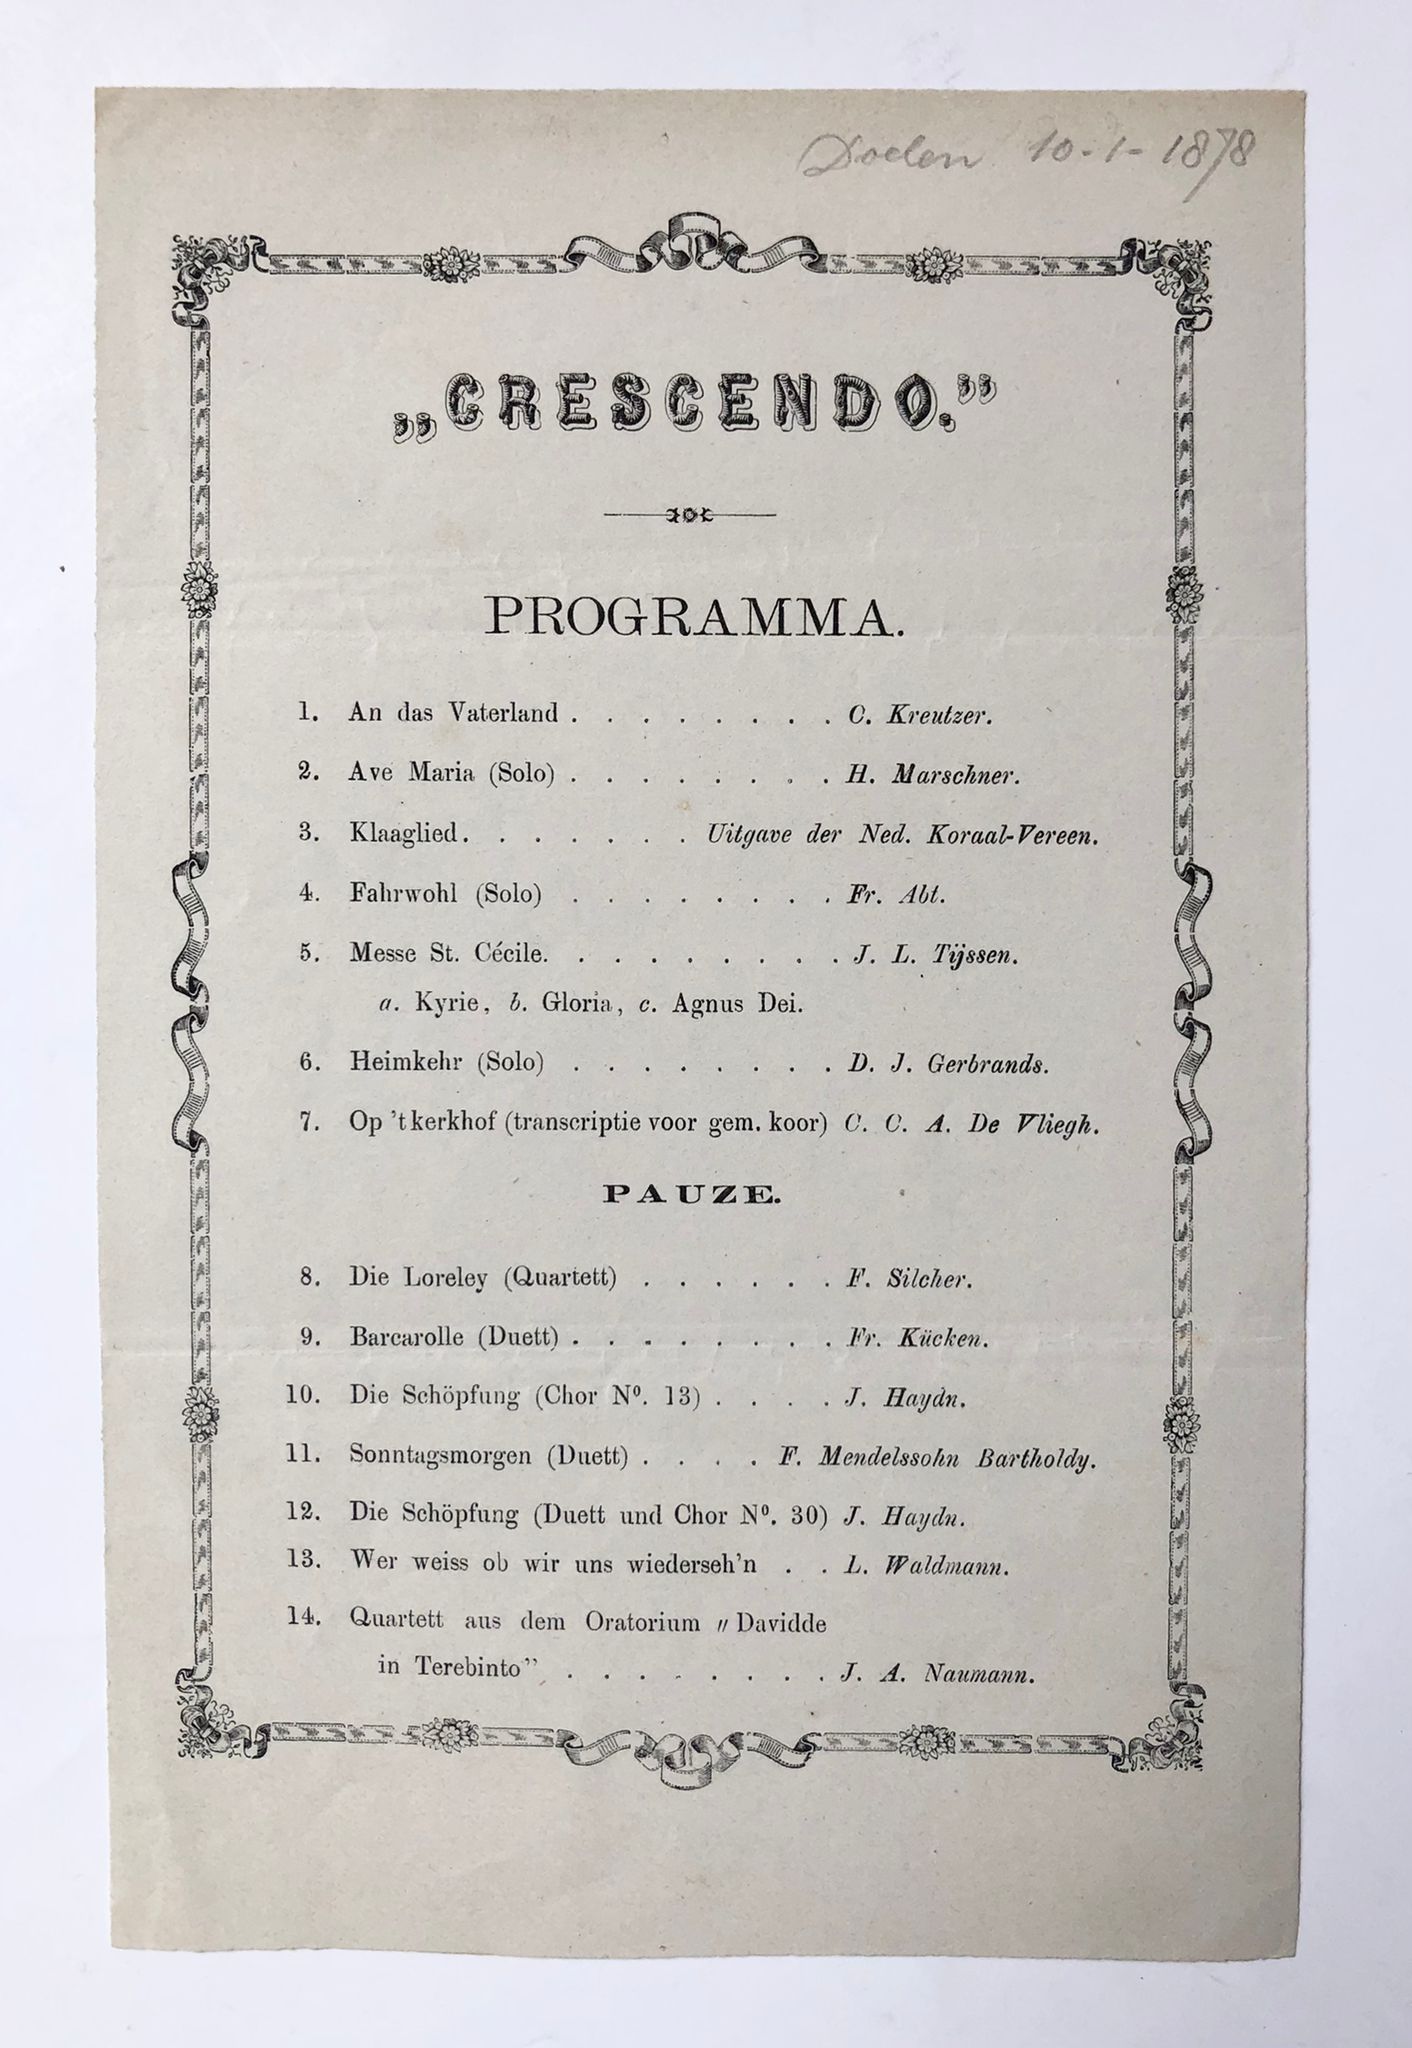  - [Music, Delft 1878] Music programma of vereniging Crescendo, Delft, 1878. 1 p., printed.